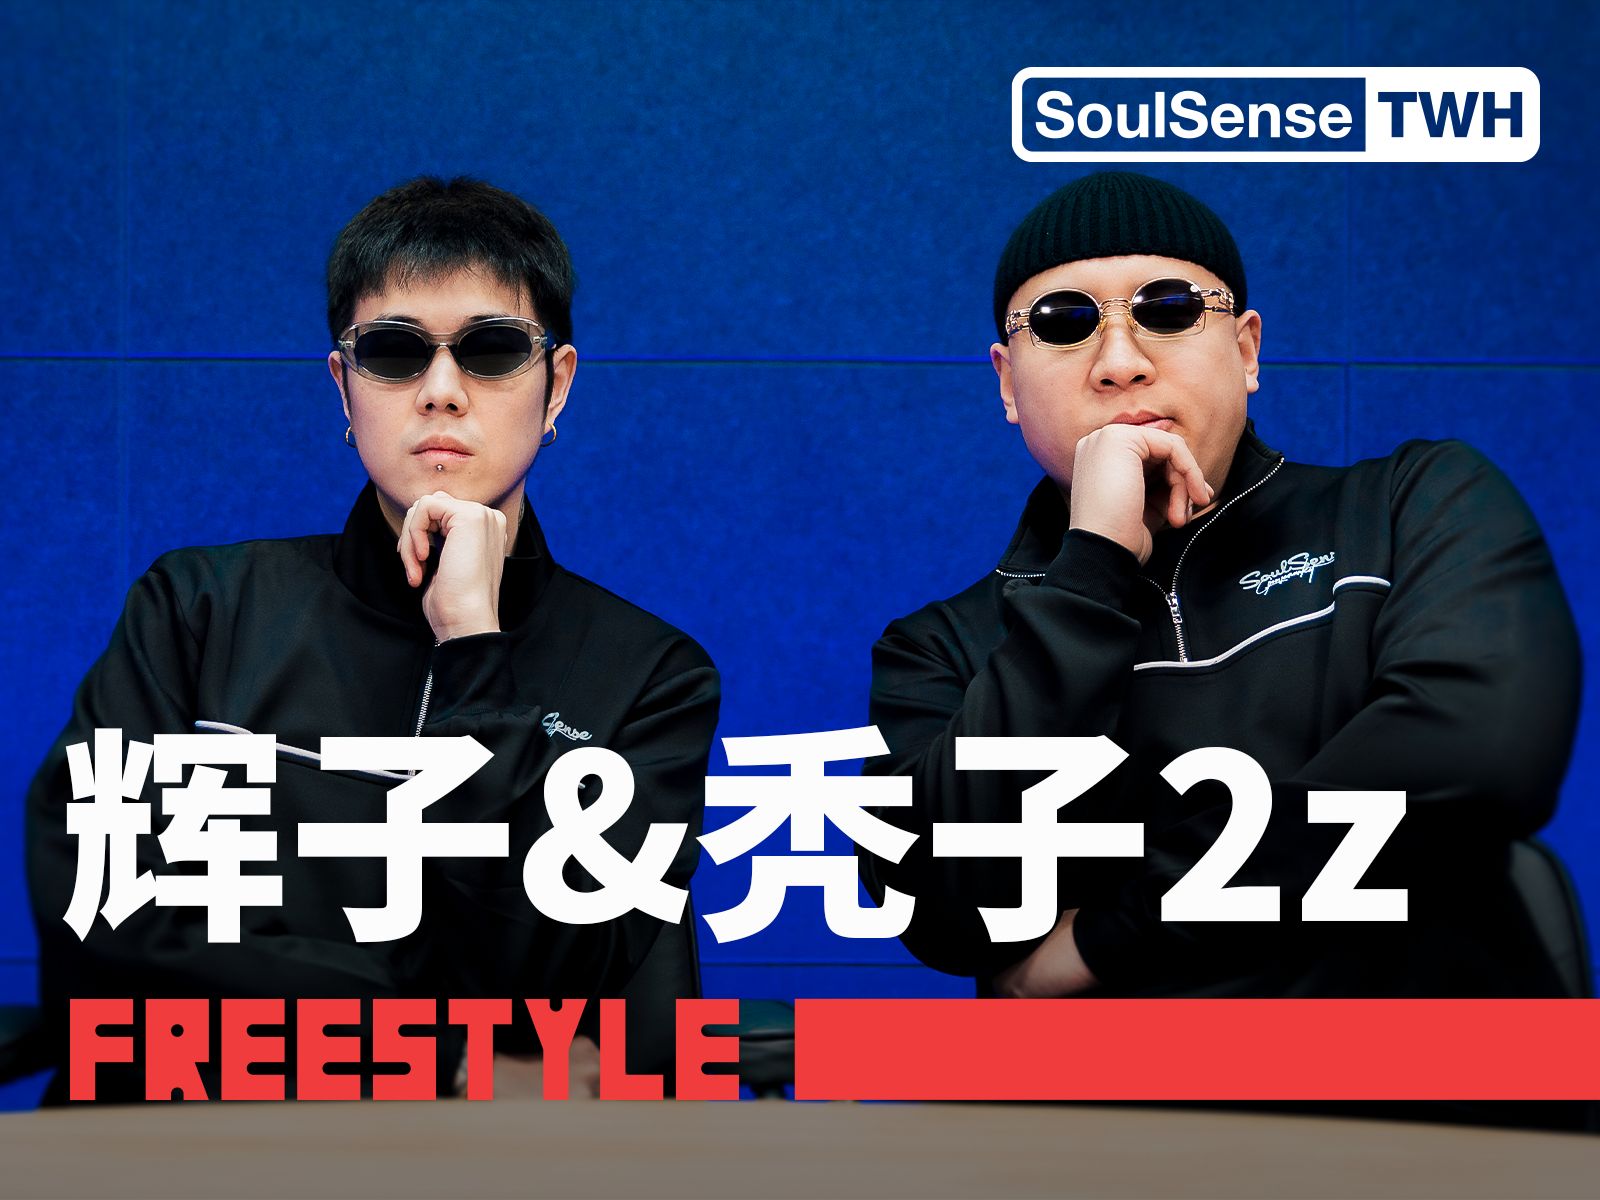 【辉子&秃子2z】“你们对于这些舶来品 真有点过于着迷了” |  SoulSense TWH电台